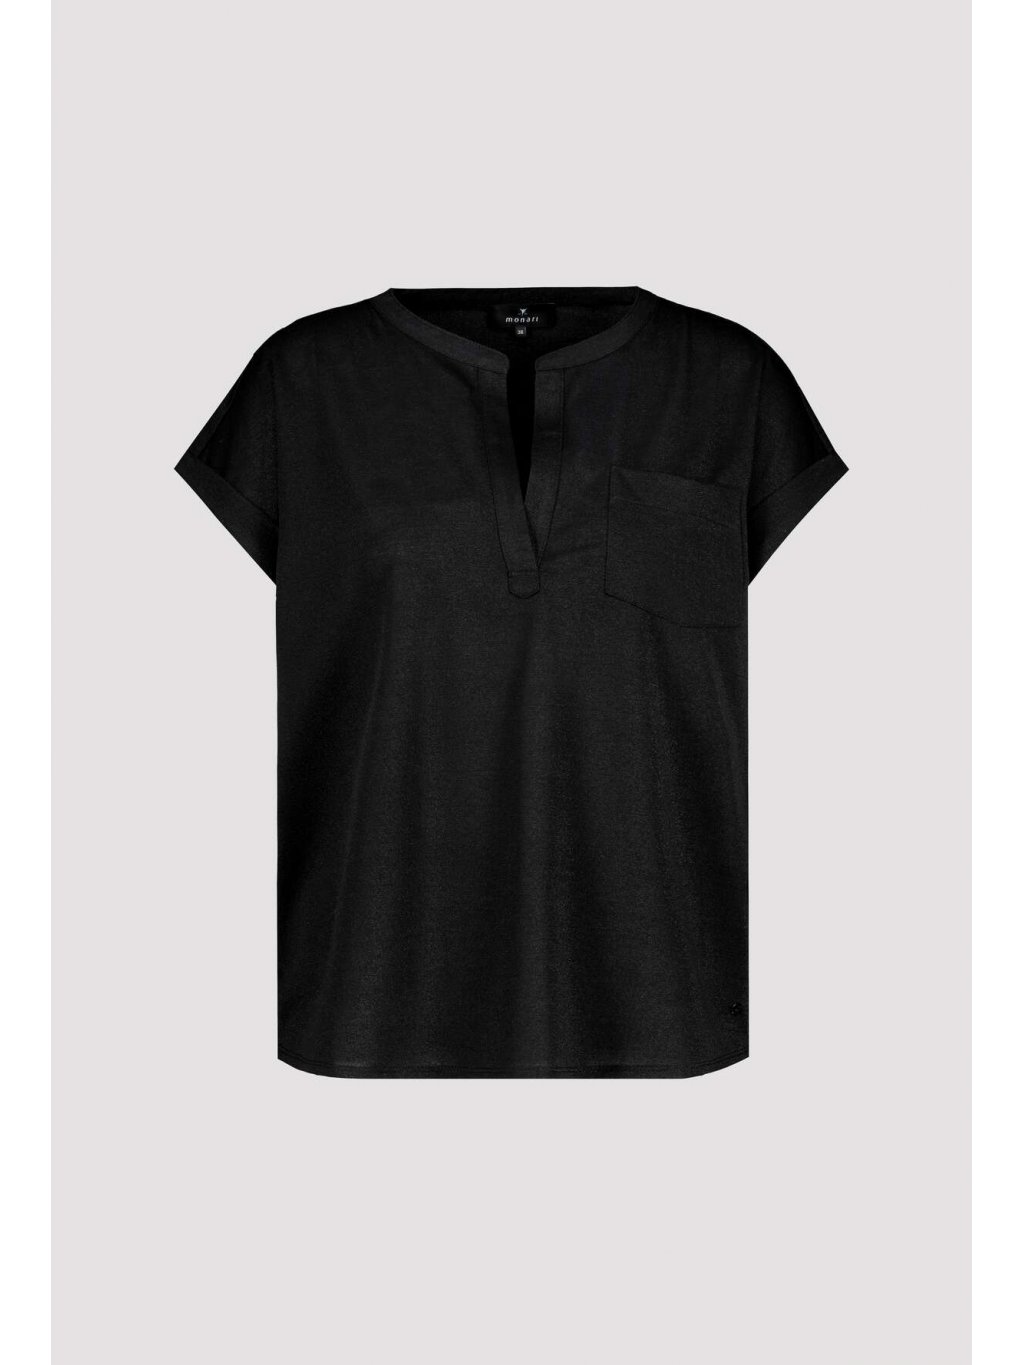 Tričko Monari 8670 černé s třpytivým lurexem 